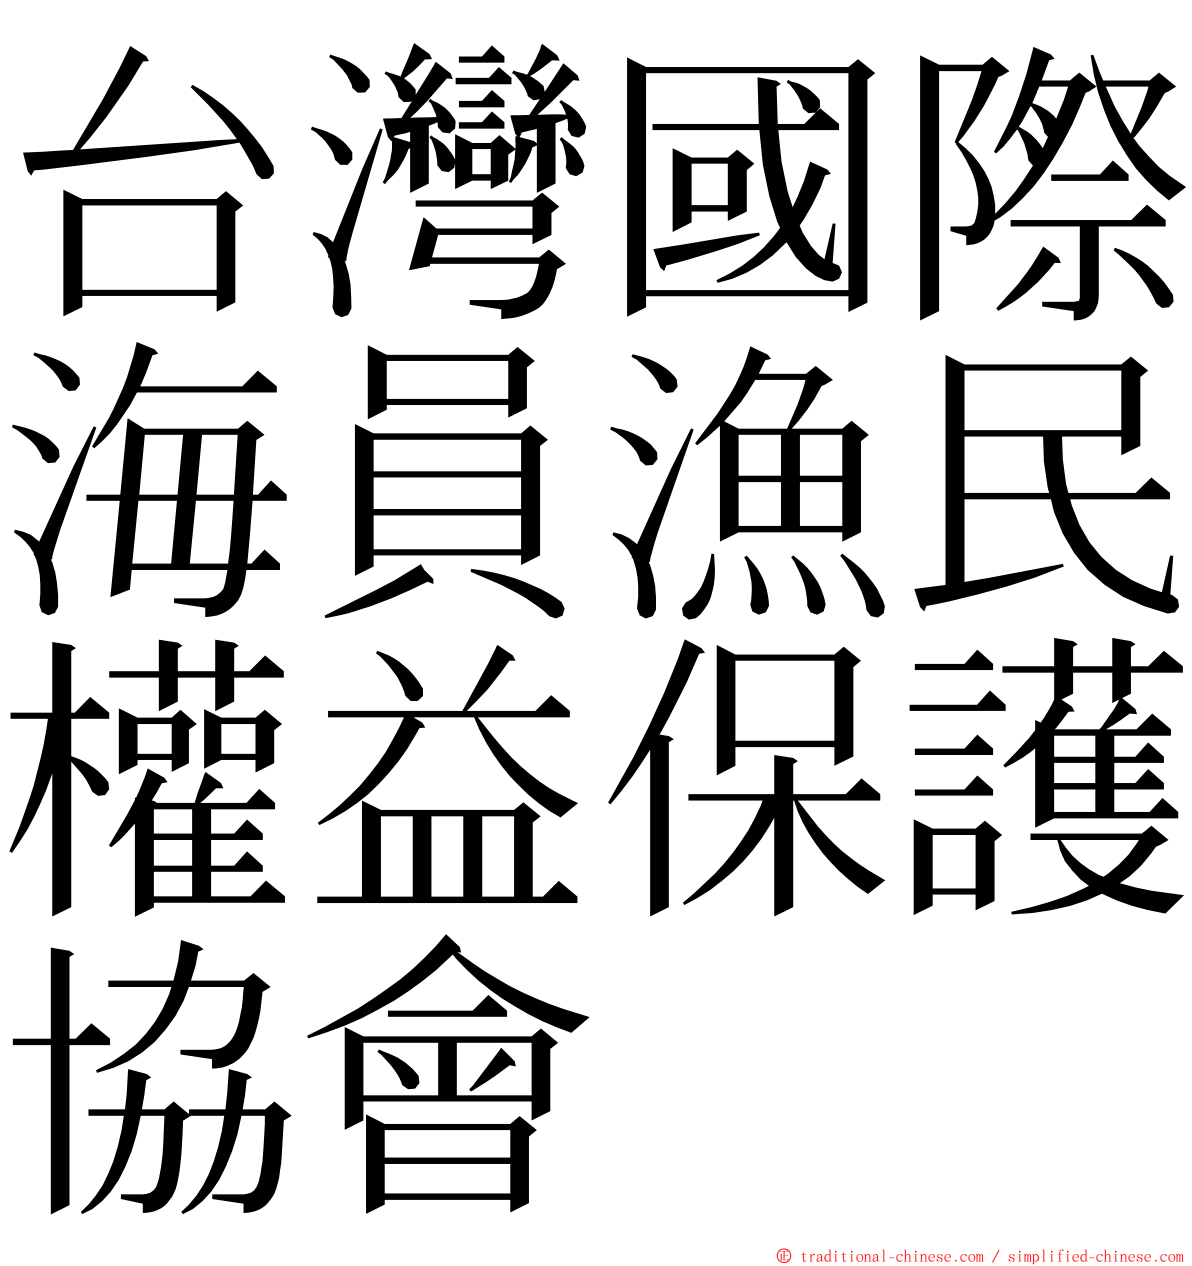 台灣國際海員漁民權益保護協會 ming font